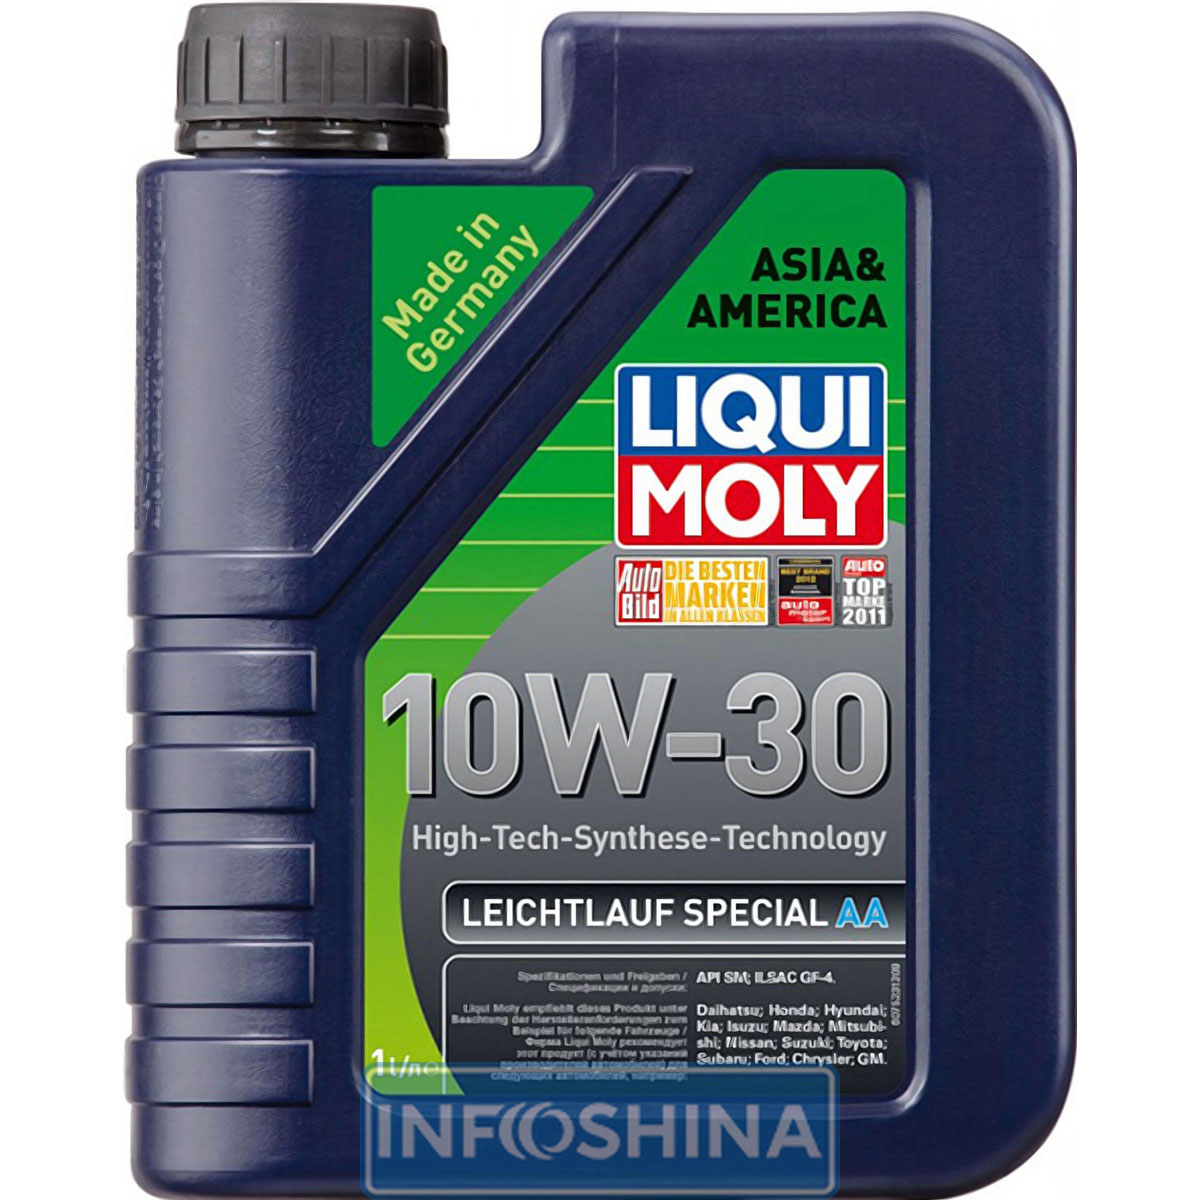 Liqui Moly Special Tec AA 10W-30